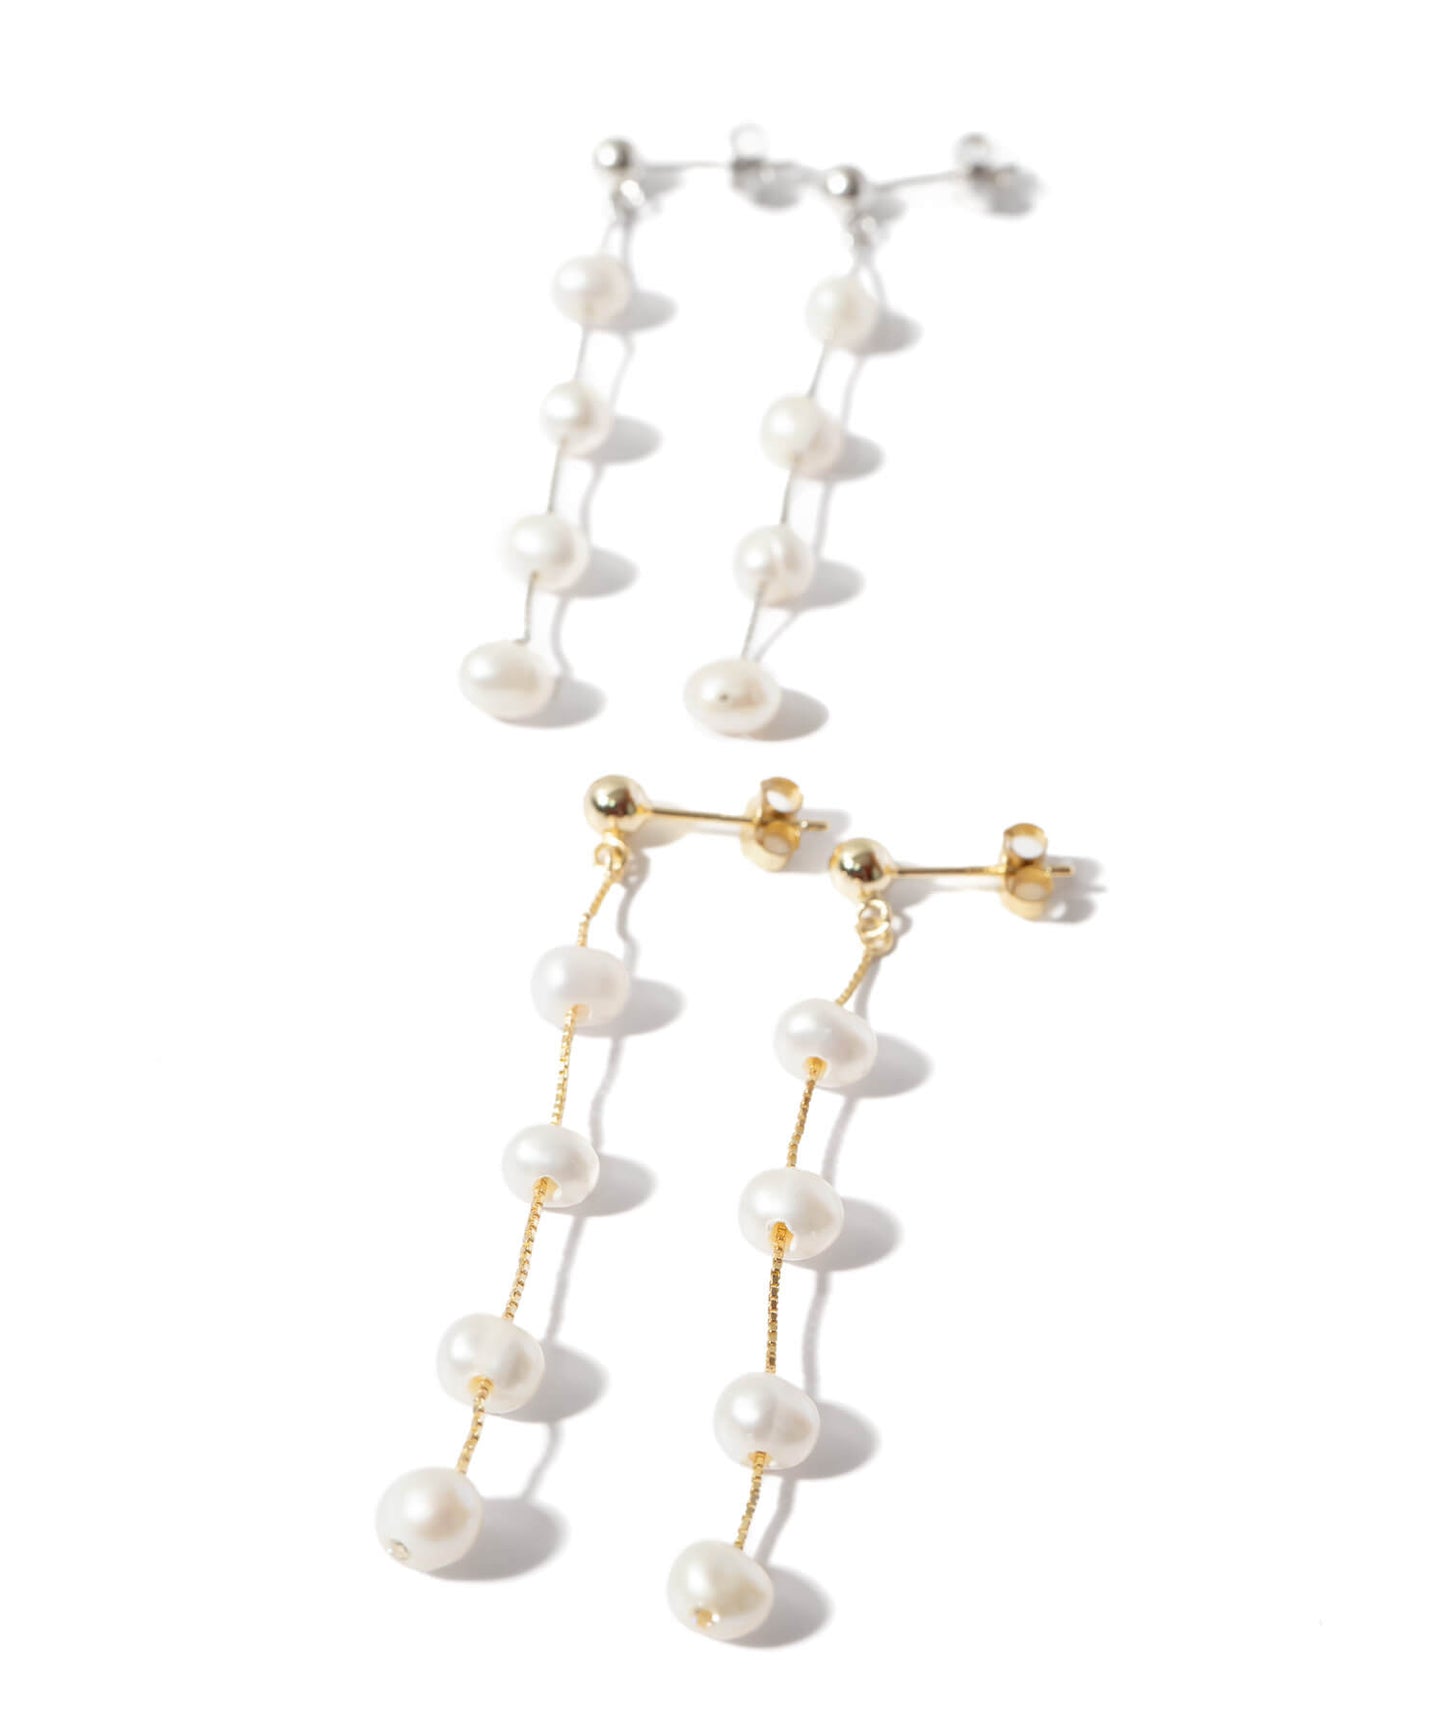 Silver925 Drop Pearl Dangle Earrings | AFRIZO-TRE PIERCE